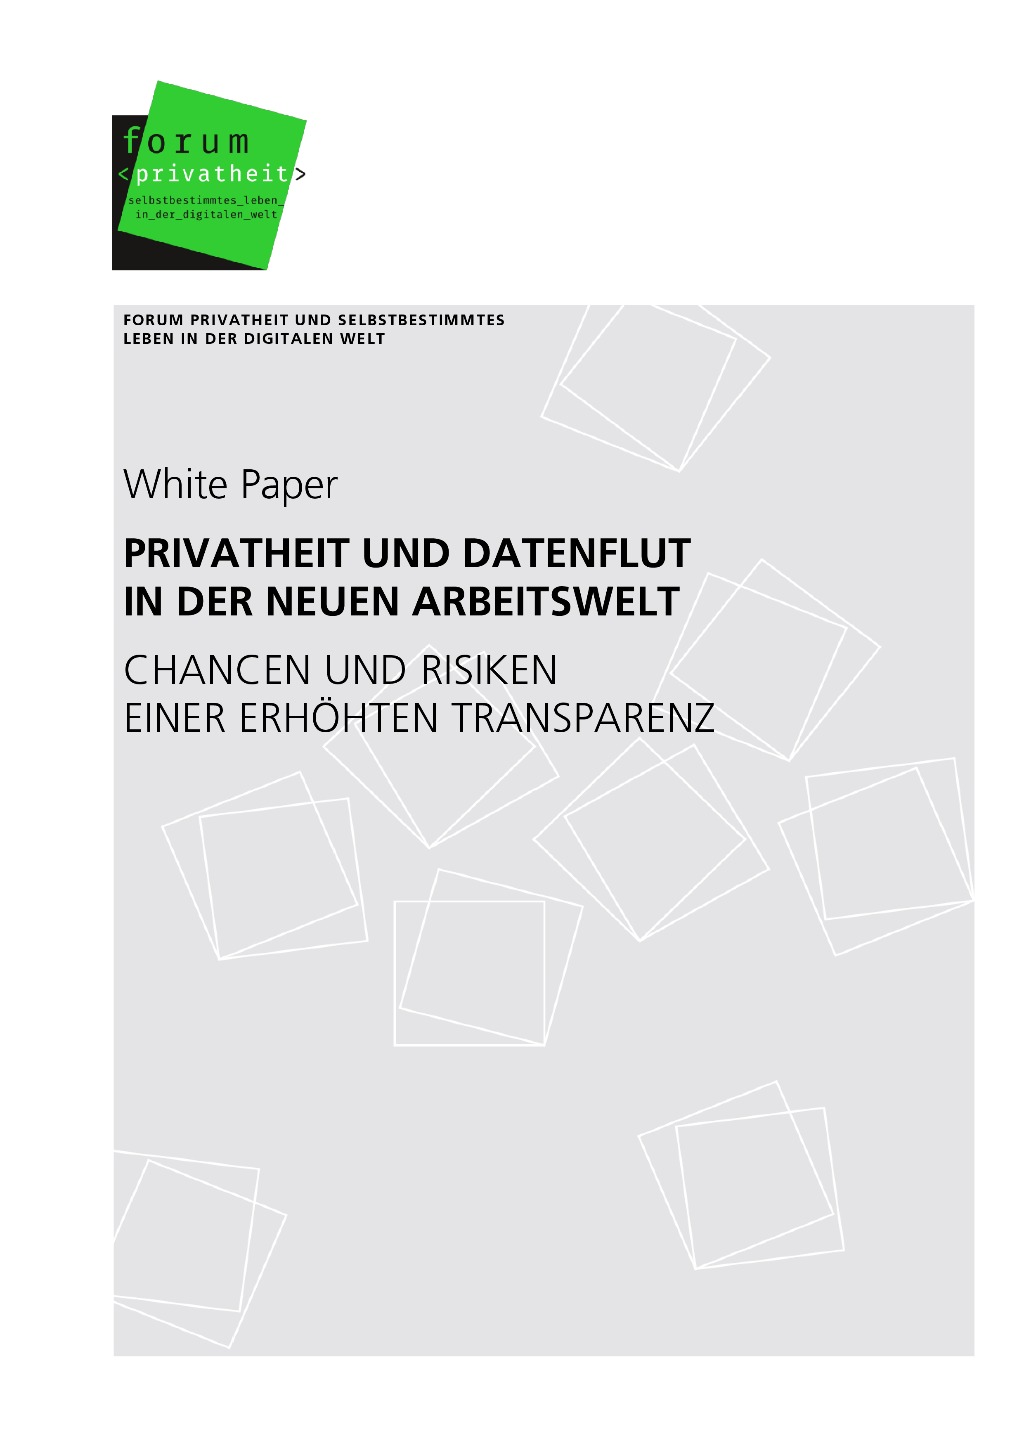 White Paper "Privatheit und Datenflut in der neuen Arbeitswelt"